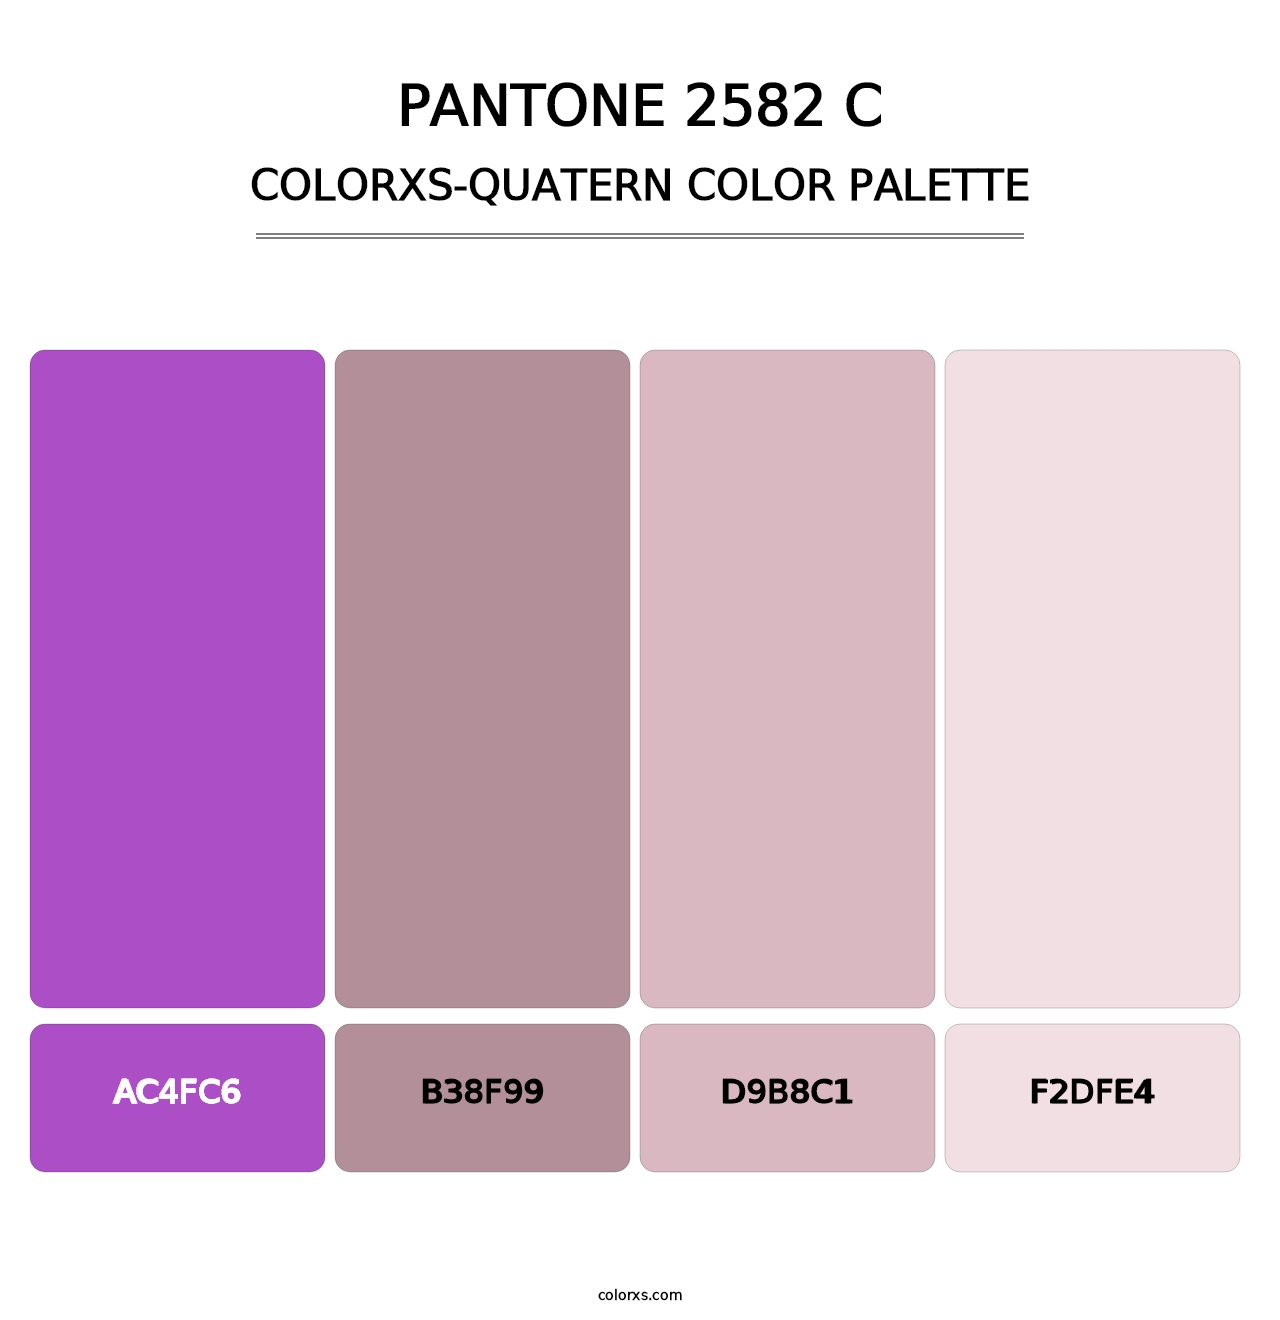 PANTONE 2582 C - Colorxs Quatern Palette